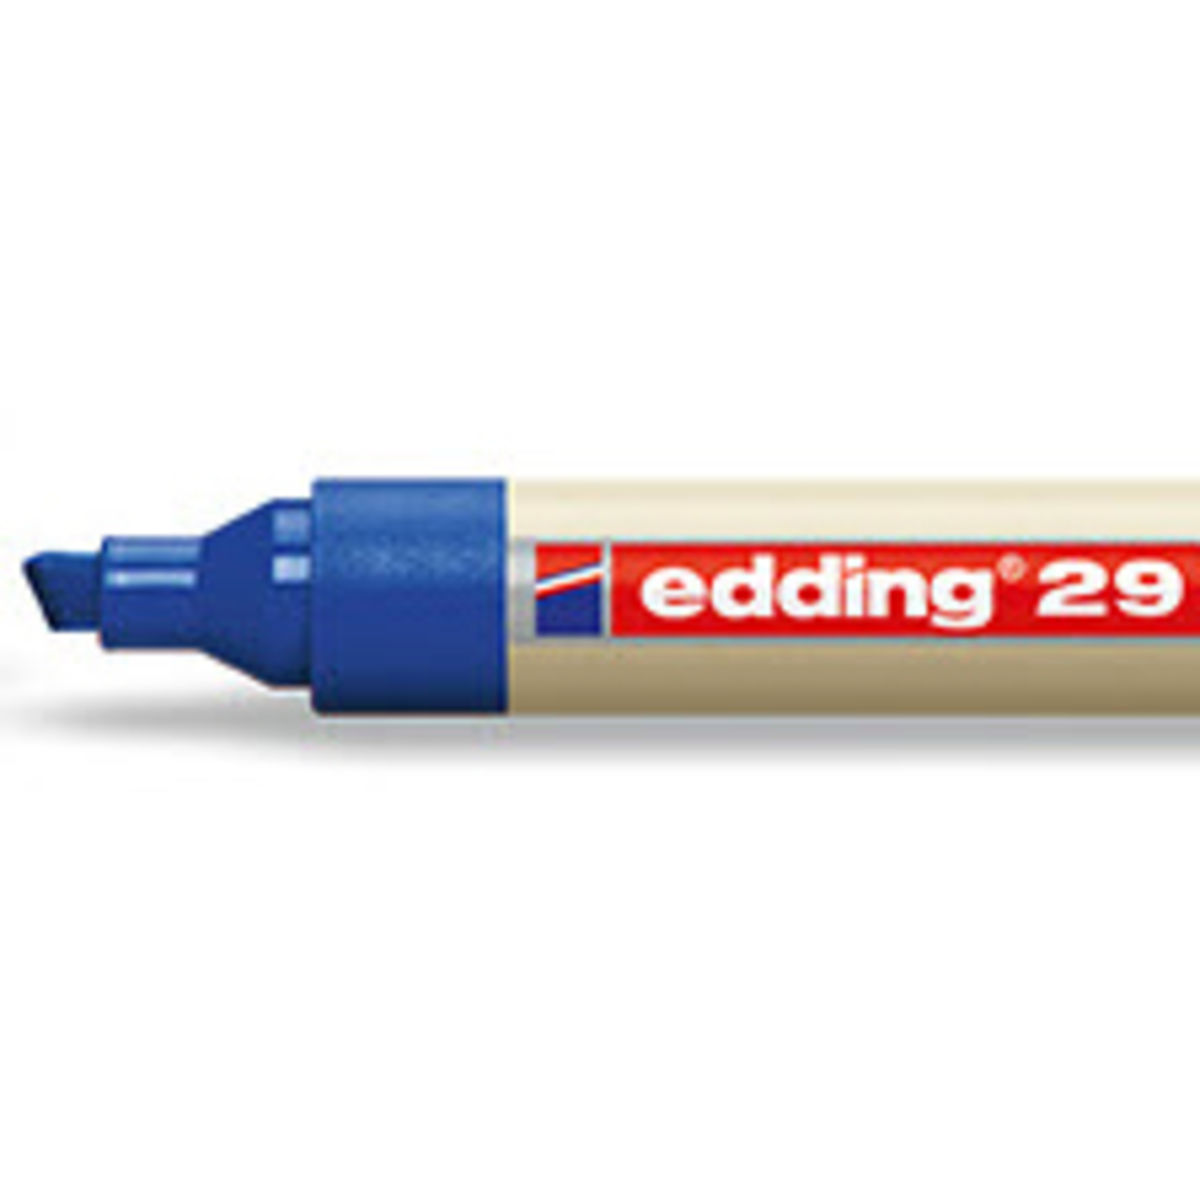 Edding EcoLine 29 marqueur pour tableau blanc (1 - 5 mm biseautée) - bleu  Edding